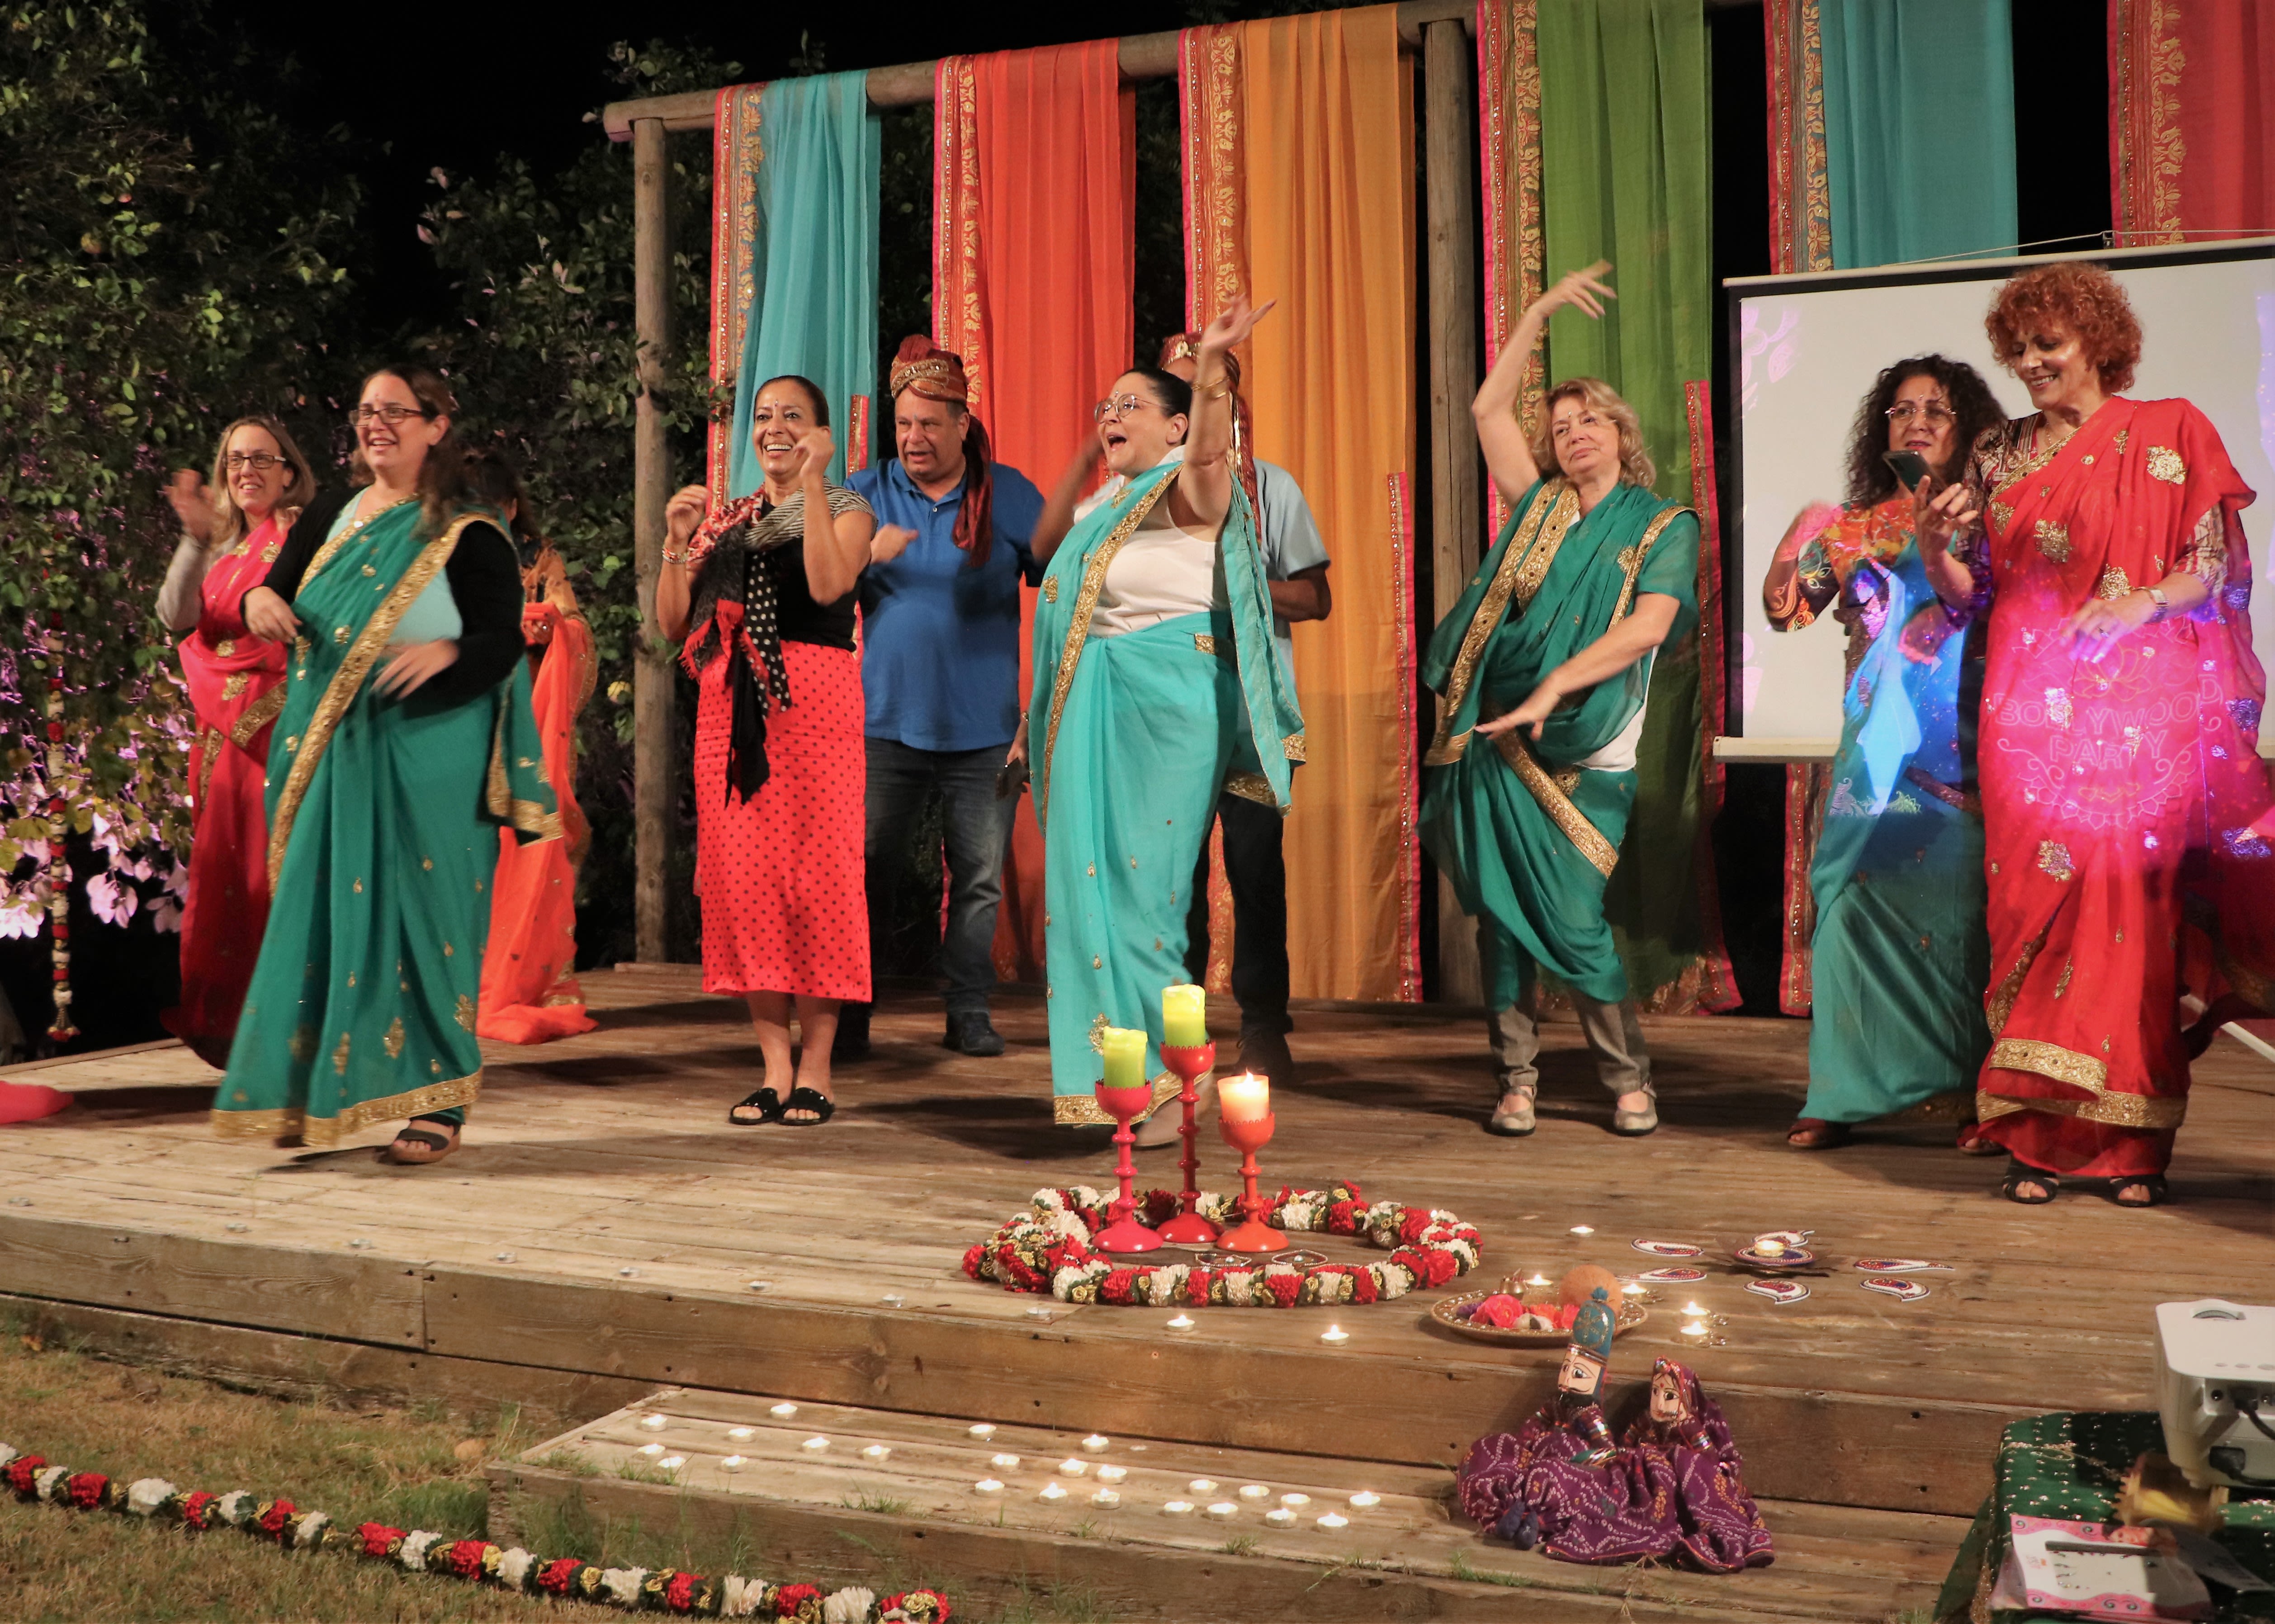 חיים בסרט הודי: חגיגה קולינרית לכבוד הדיוואלי ההודי